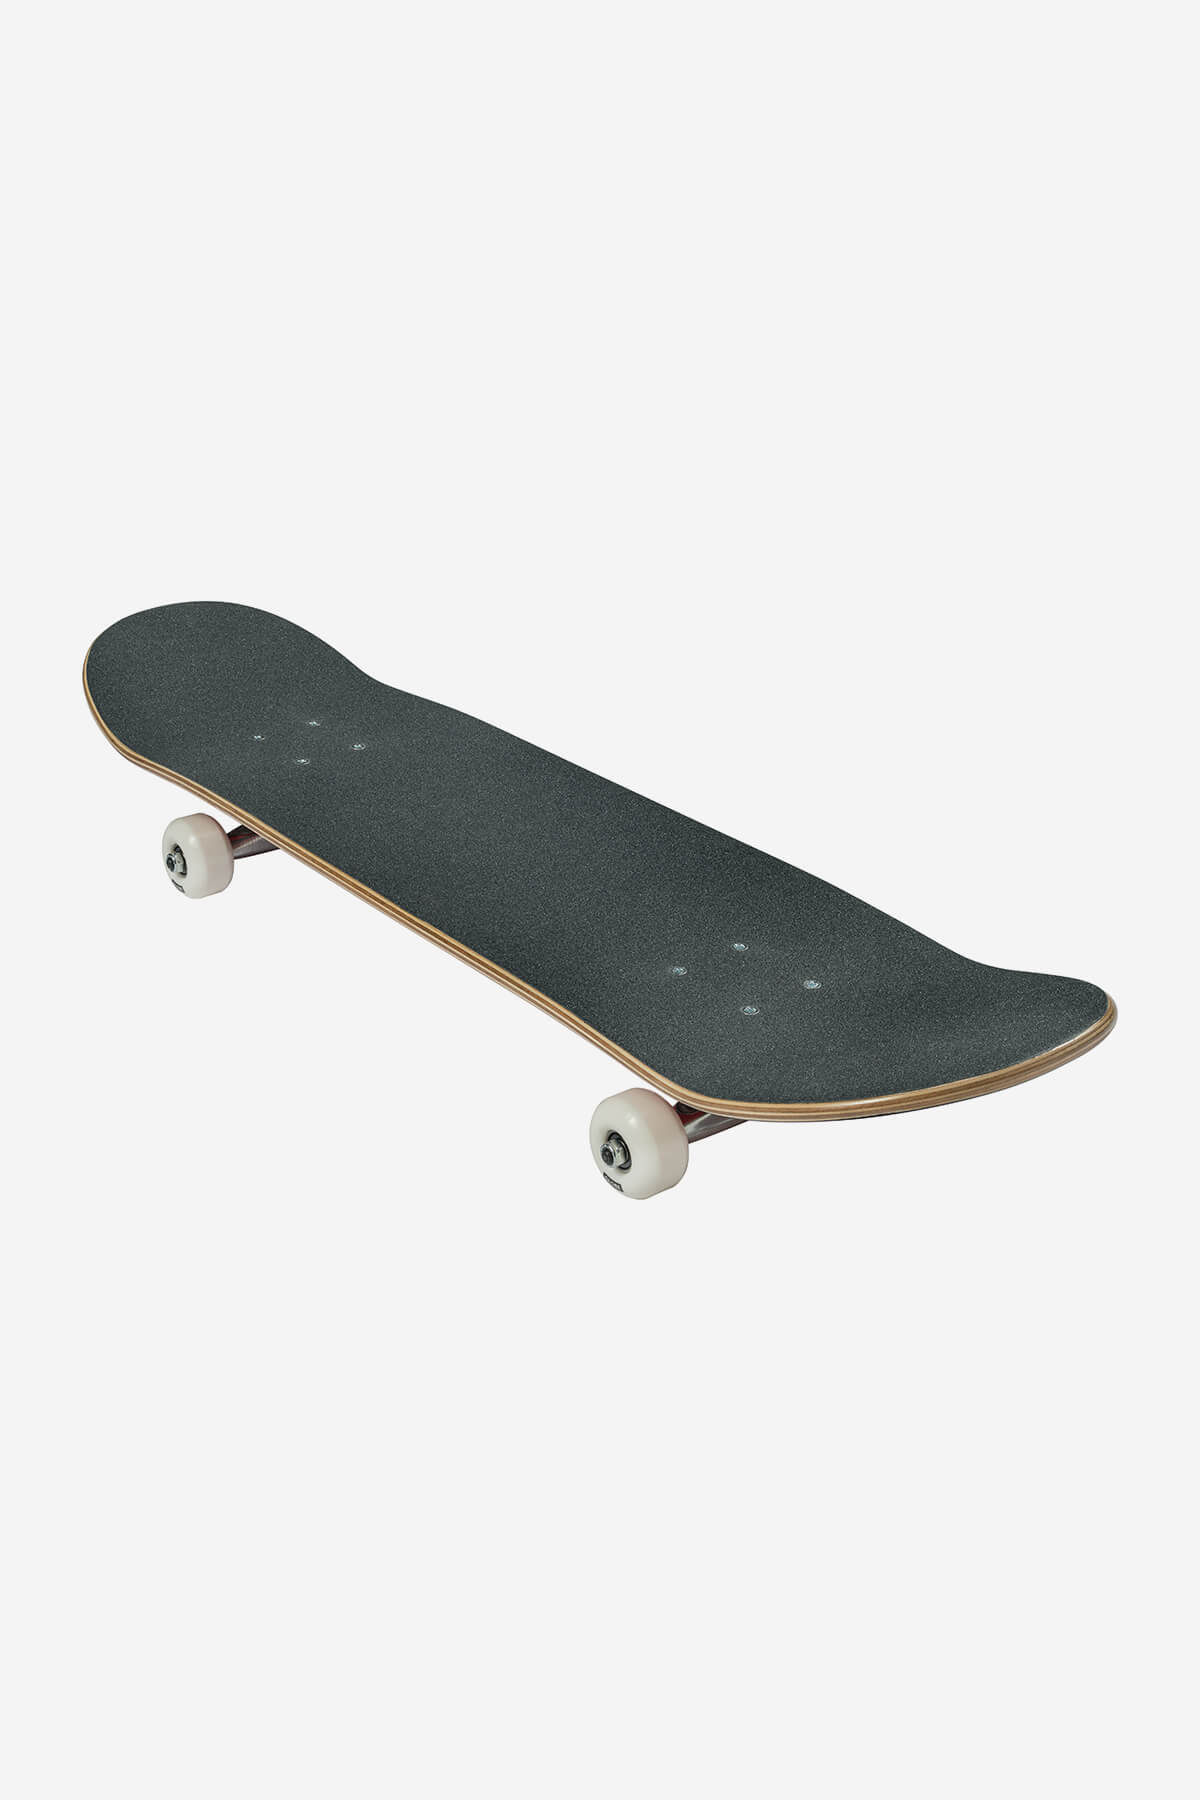 g0 fubar black red 7.75" complete skateboard